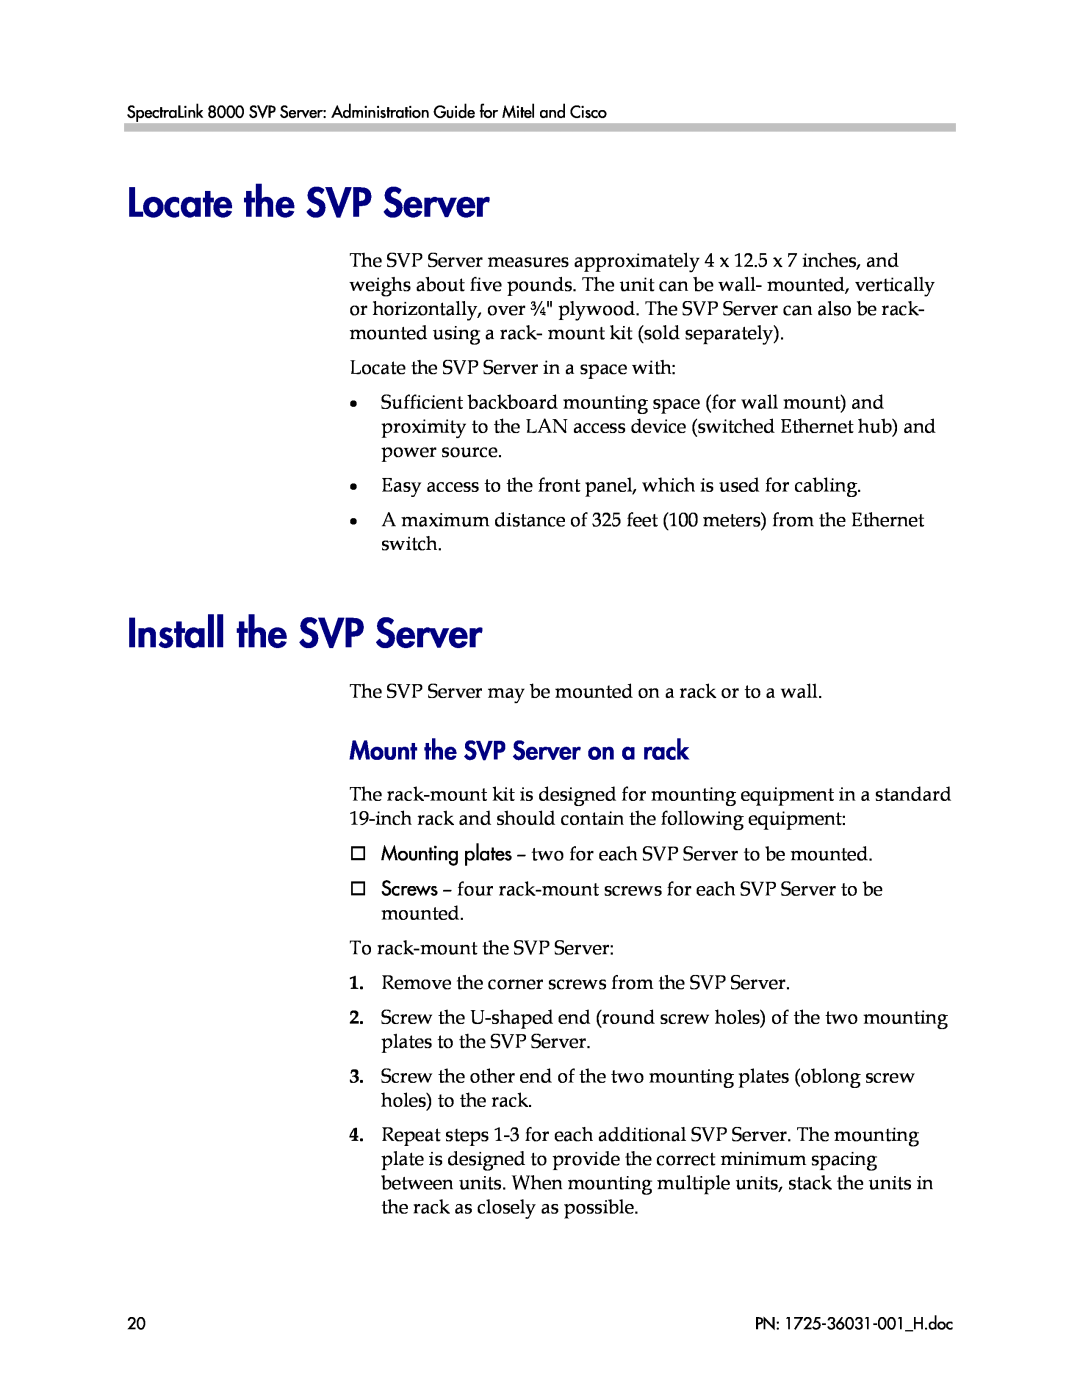 Polycom VP010, 1725-36031-001 manual Locate the SVP Server, Install the SVP Server, Mount the SVP Server on a rack 